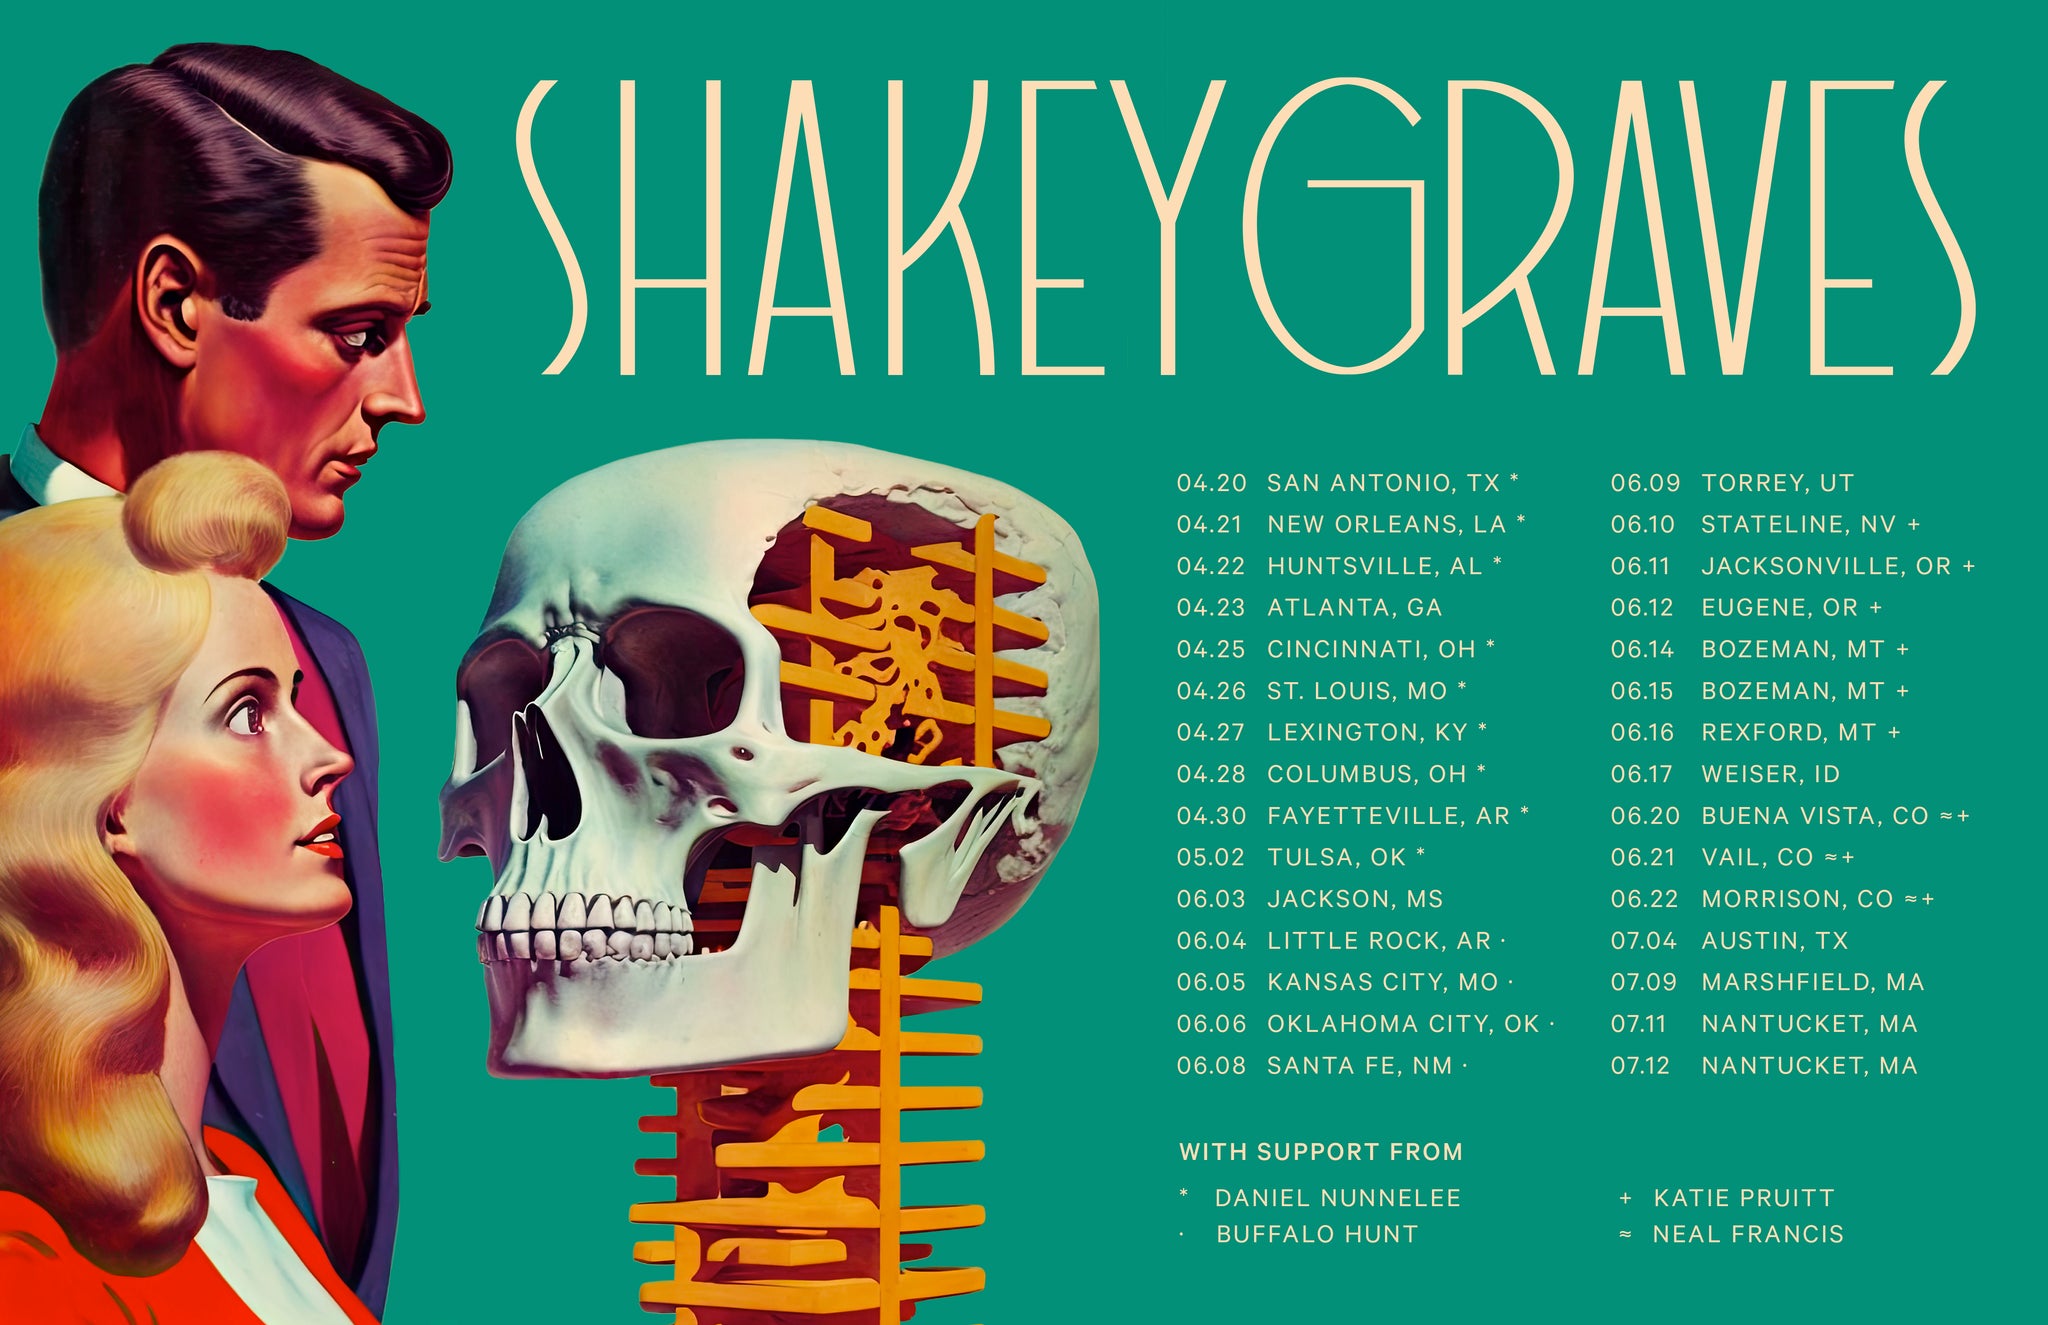 shakey graves tour